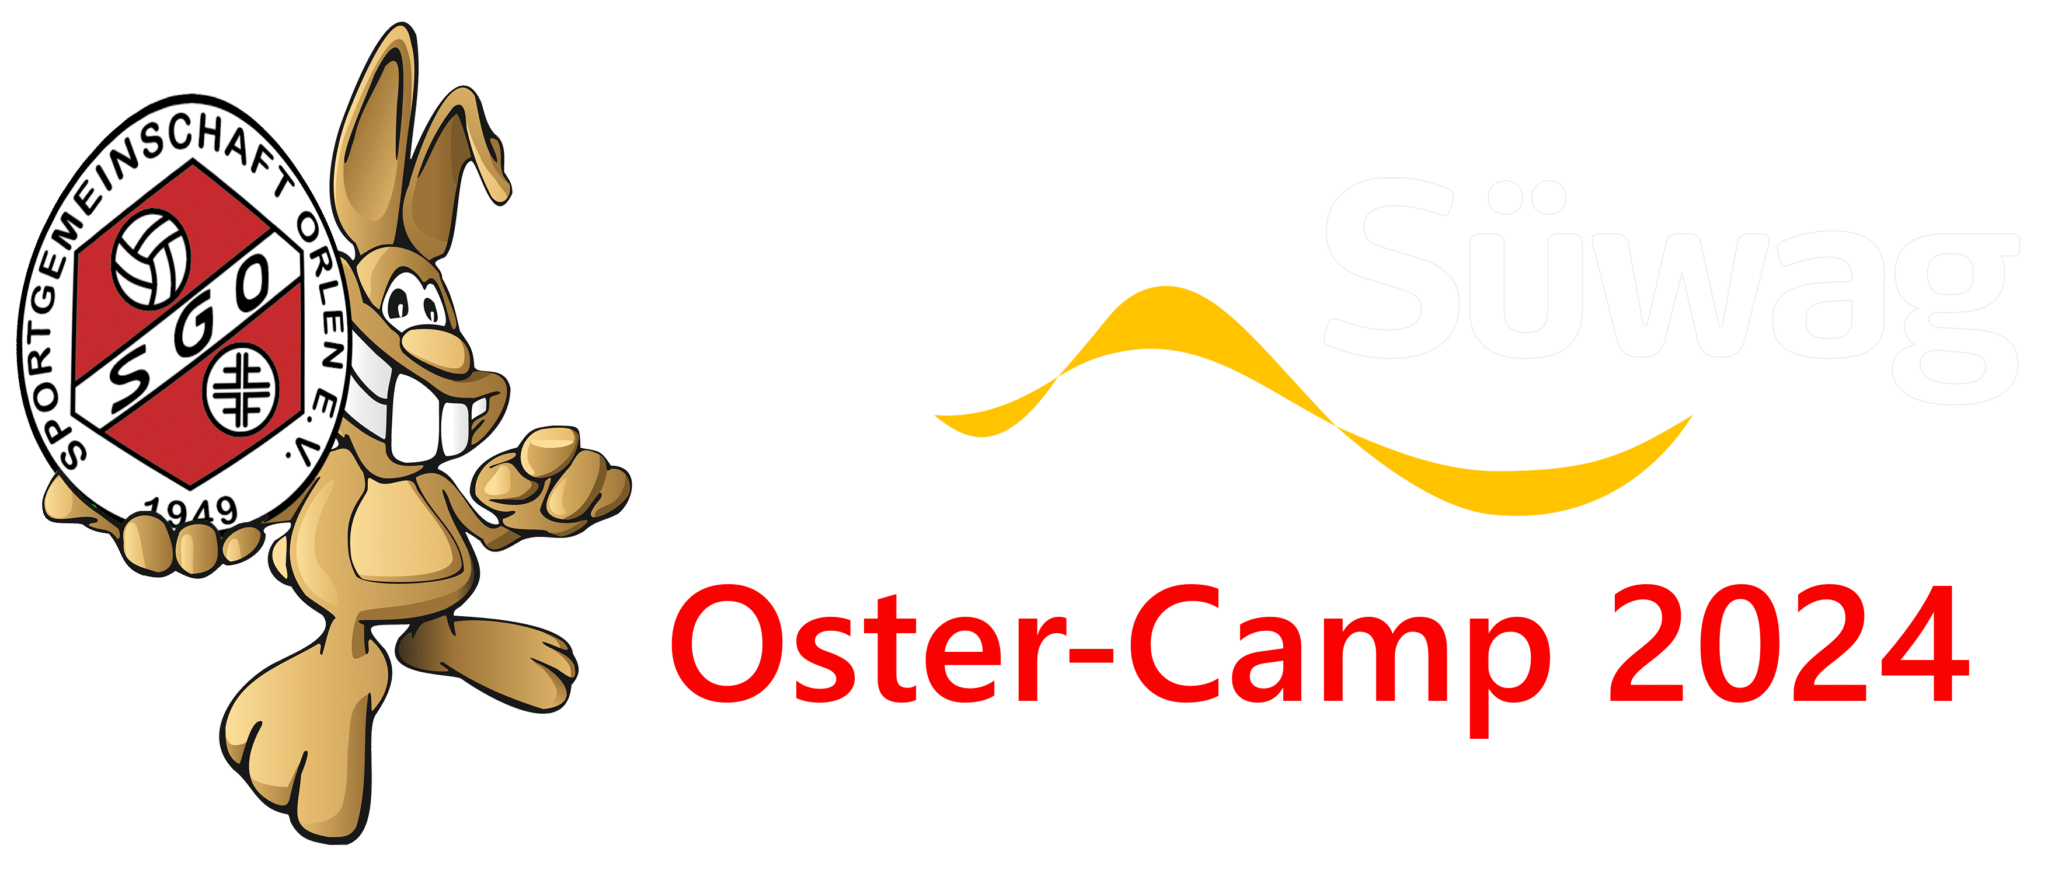 Logo OsterCamp